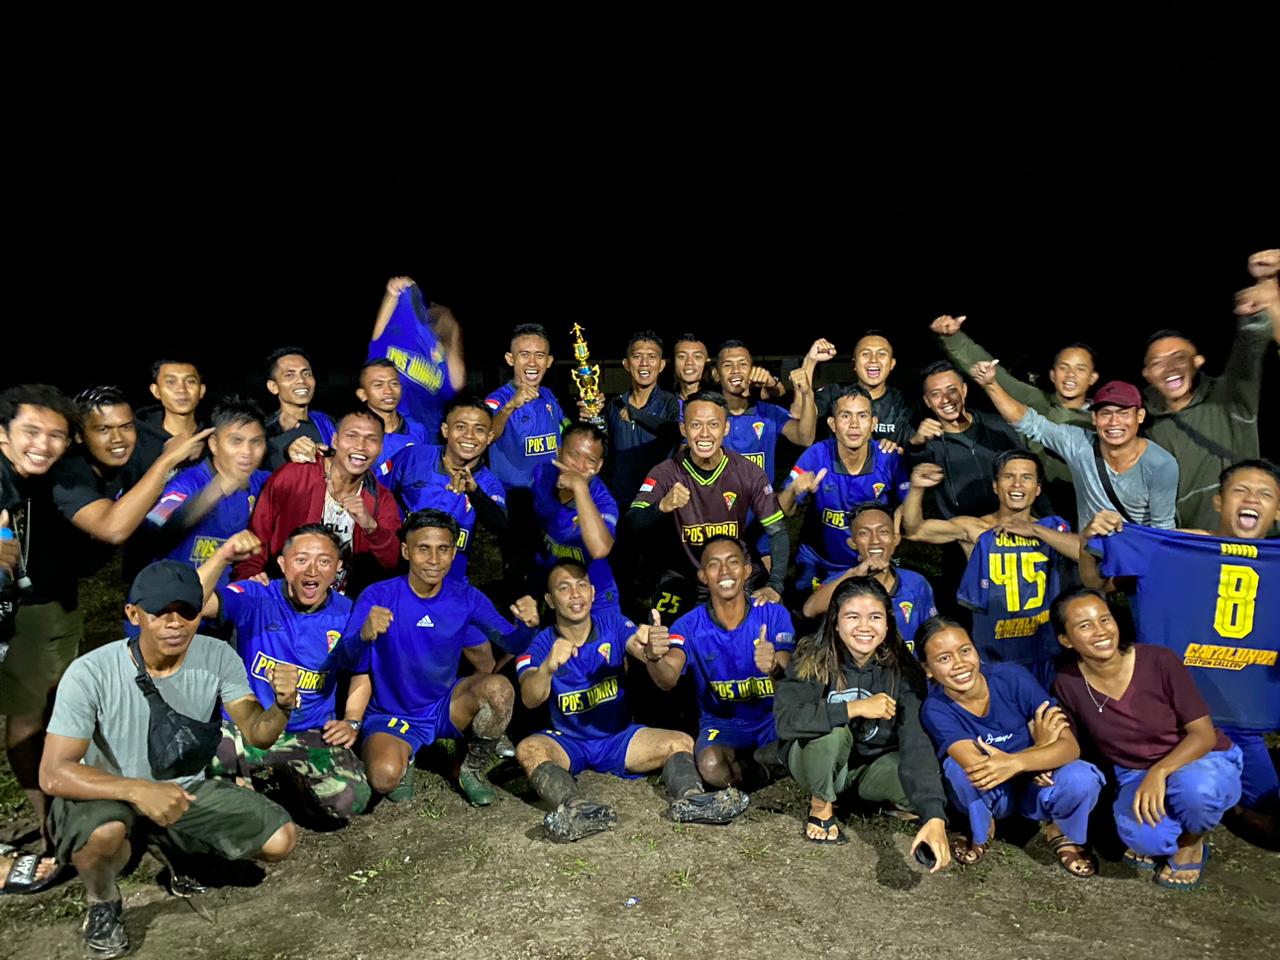 Ikuti Turnamen Sepak Bola, Pos Tanjung Lesung Satgas Pamtas Yonarmed 19/105 Trk Bogani Bentuk Tim Bersama Masyarakat Setempat Wujud Pembinaan Terhadap Warga Desa